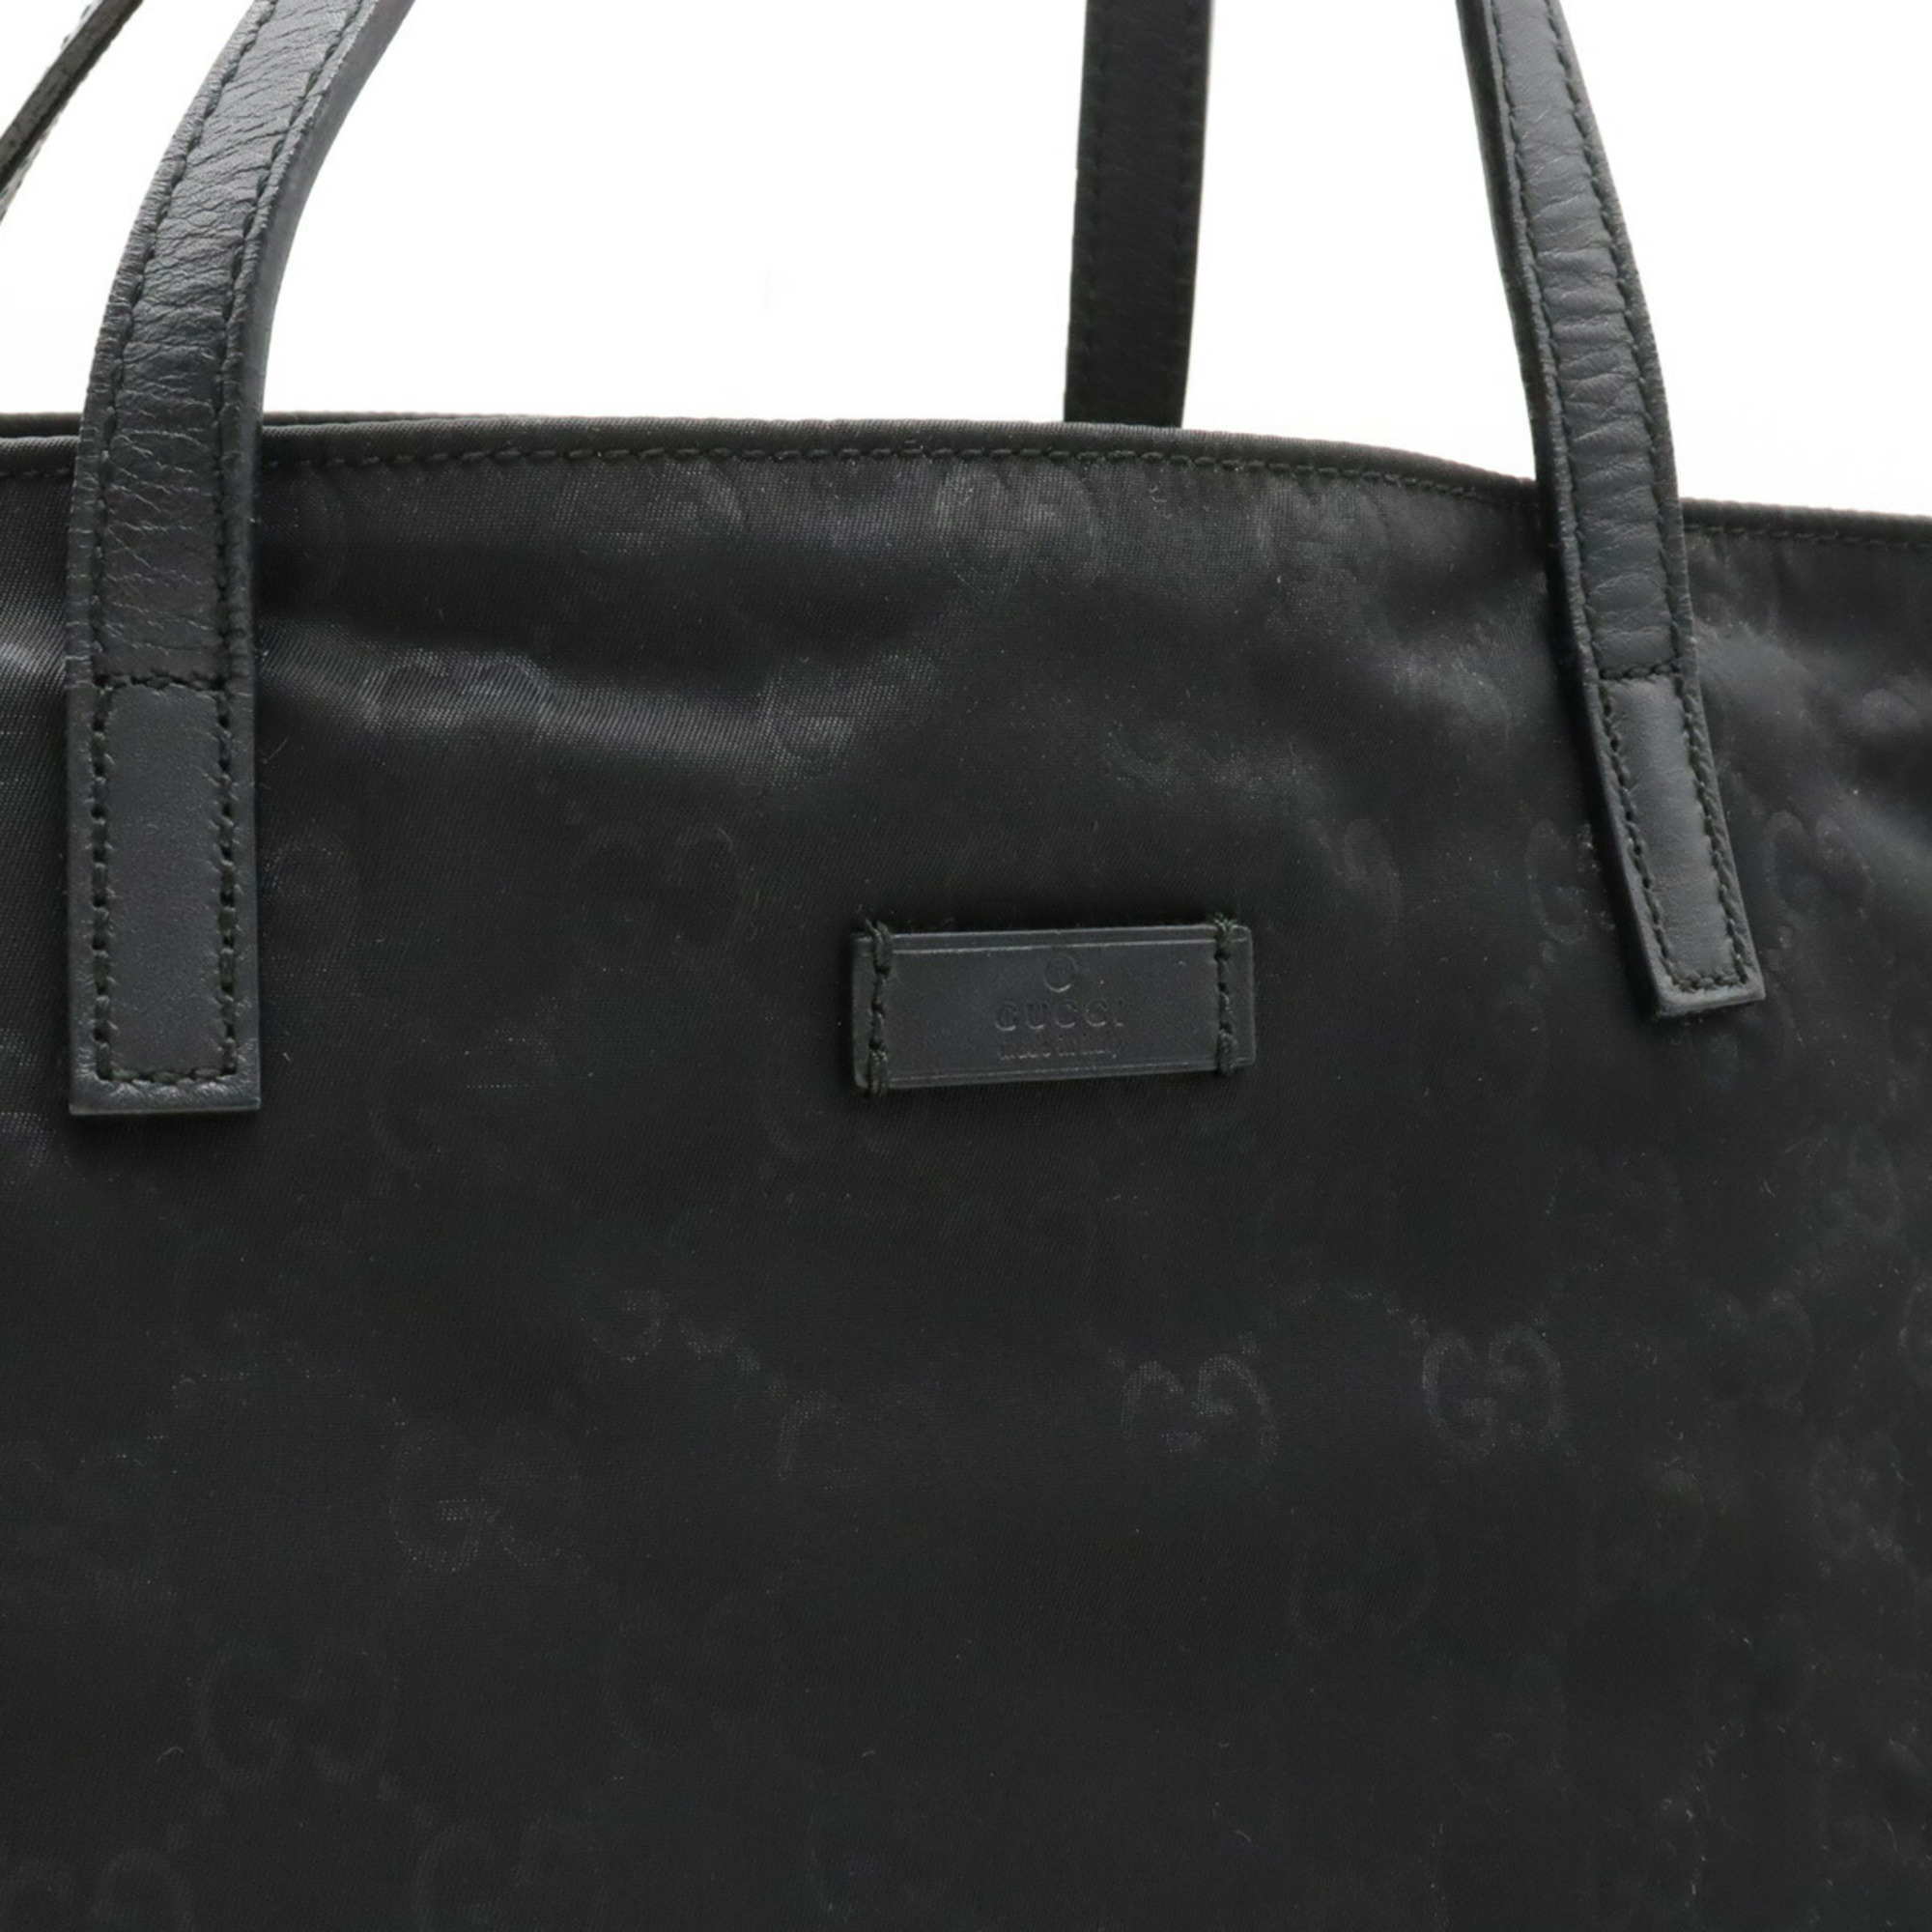 GUCCI Gucci GG Nylon Tote Bag Handbag Leather Black 282439